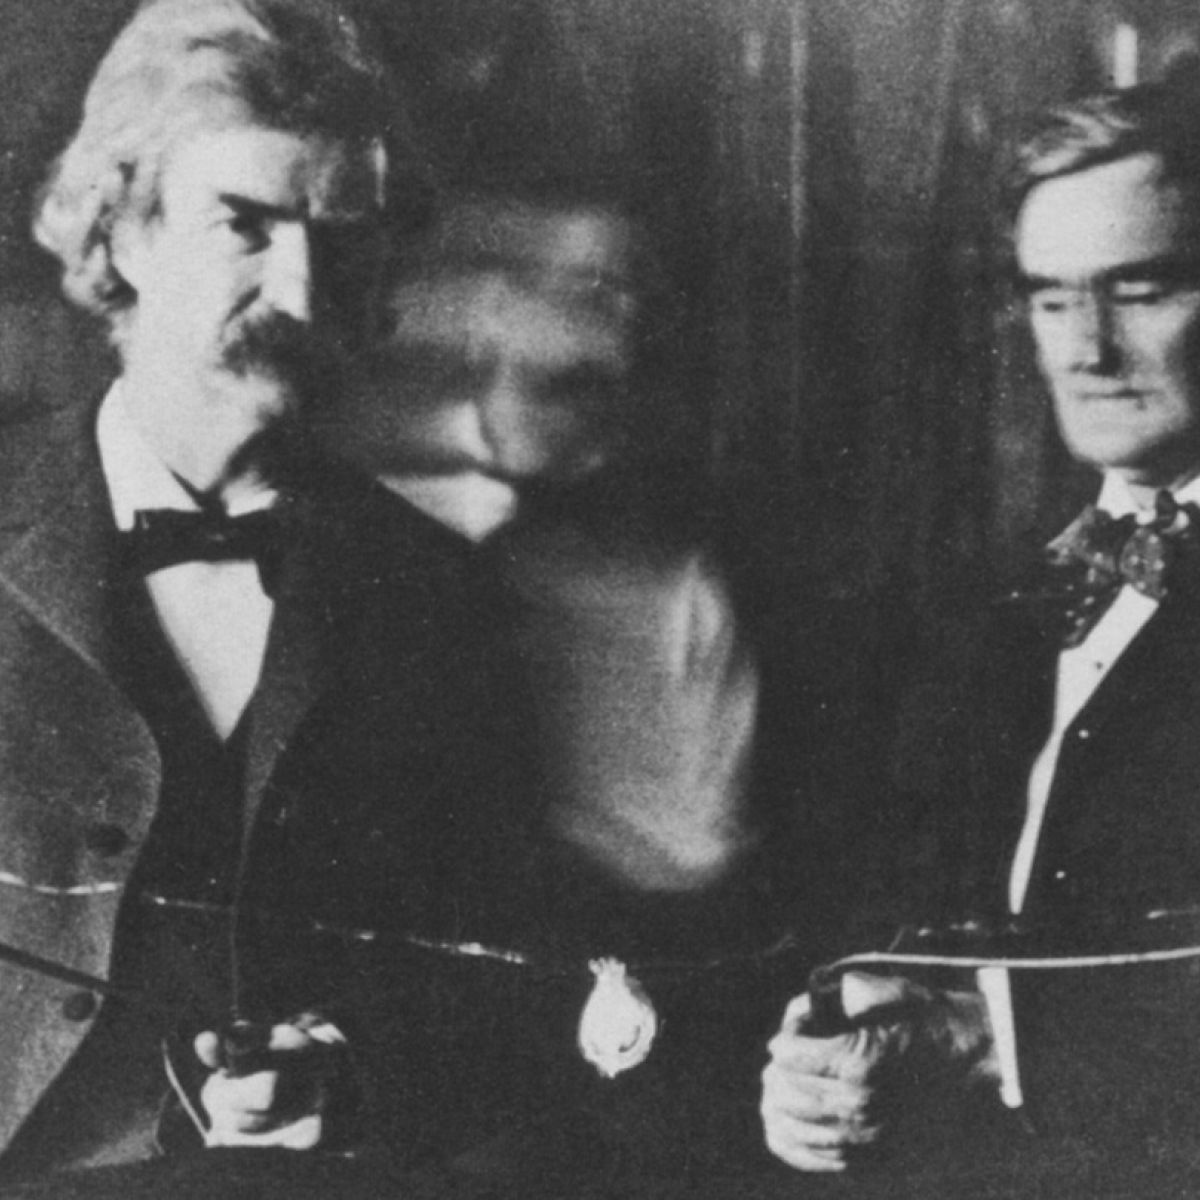 The electricity between Mark Twain and Nikola Tesla